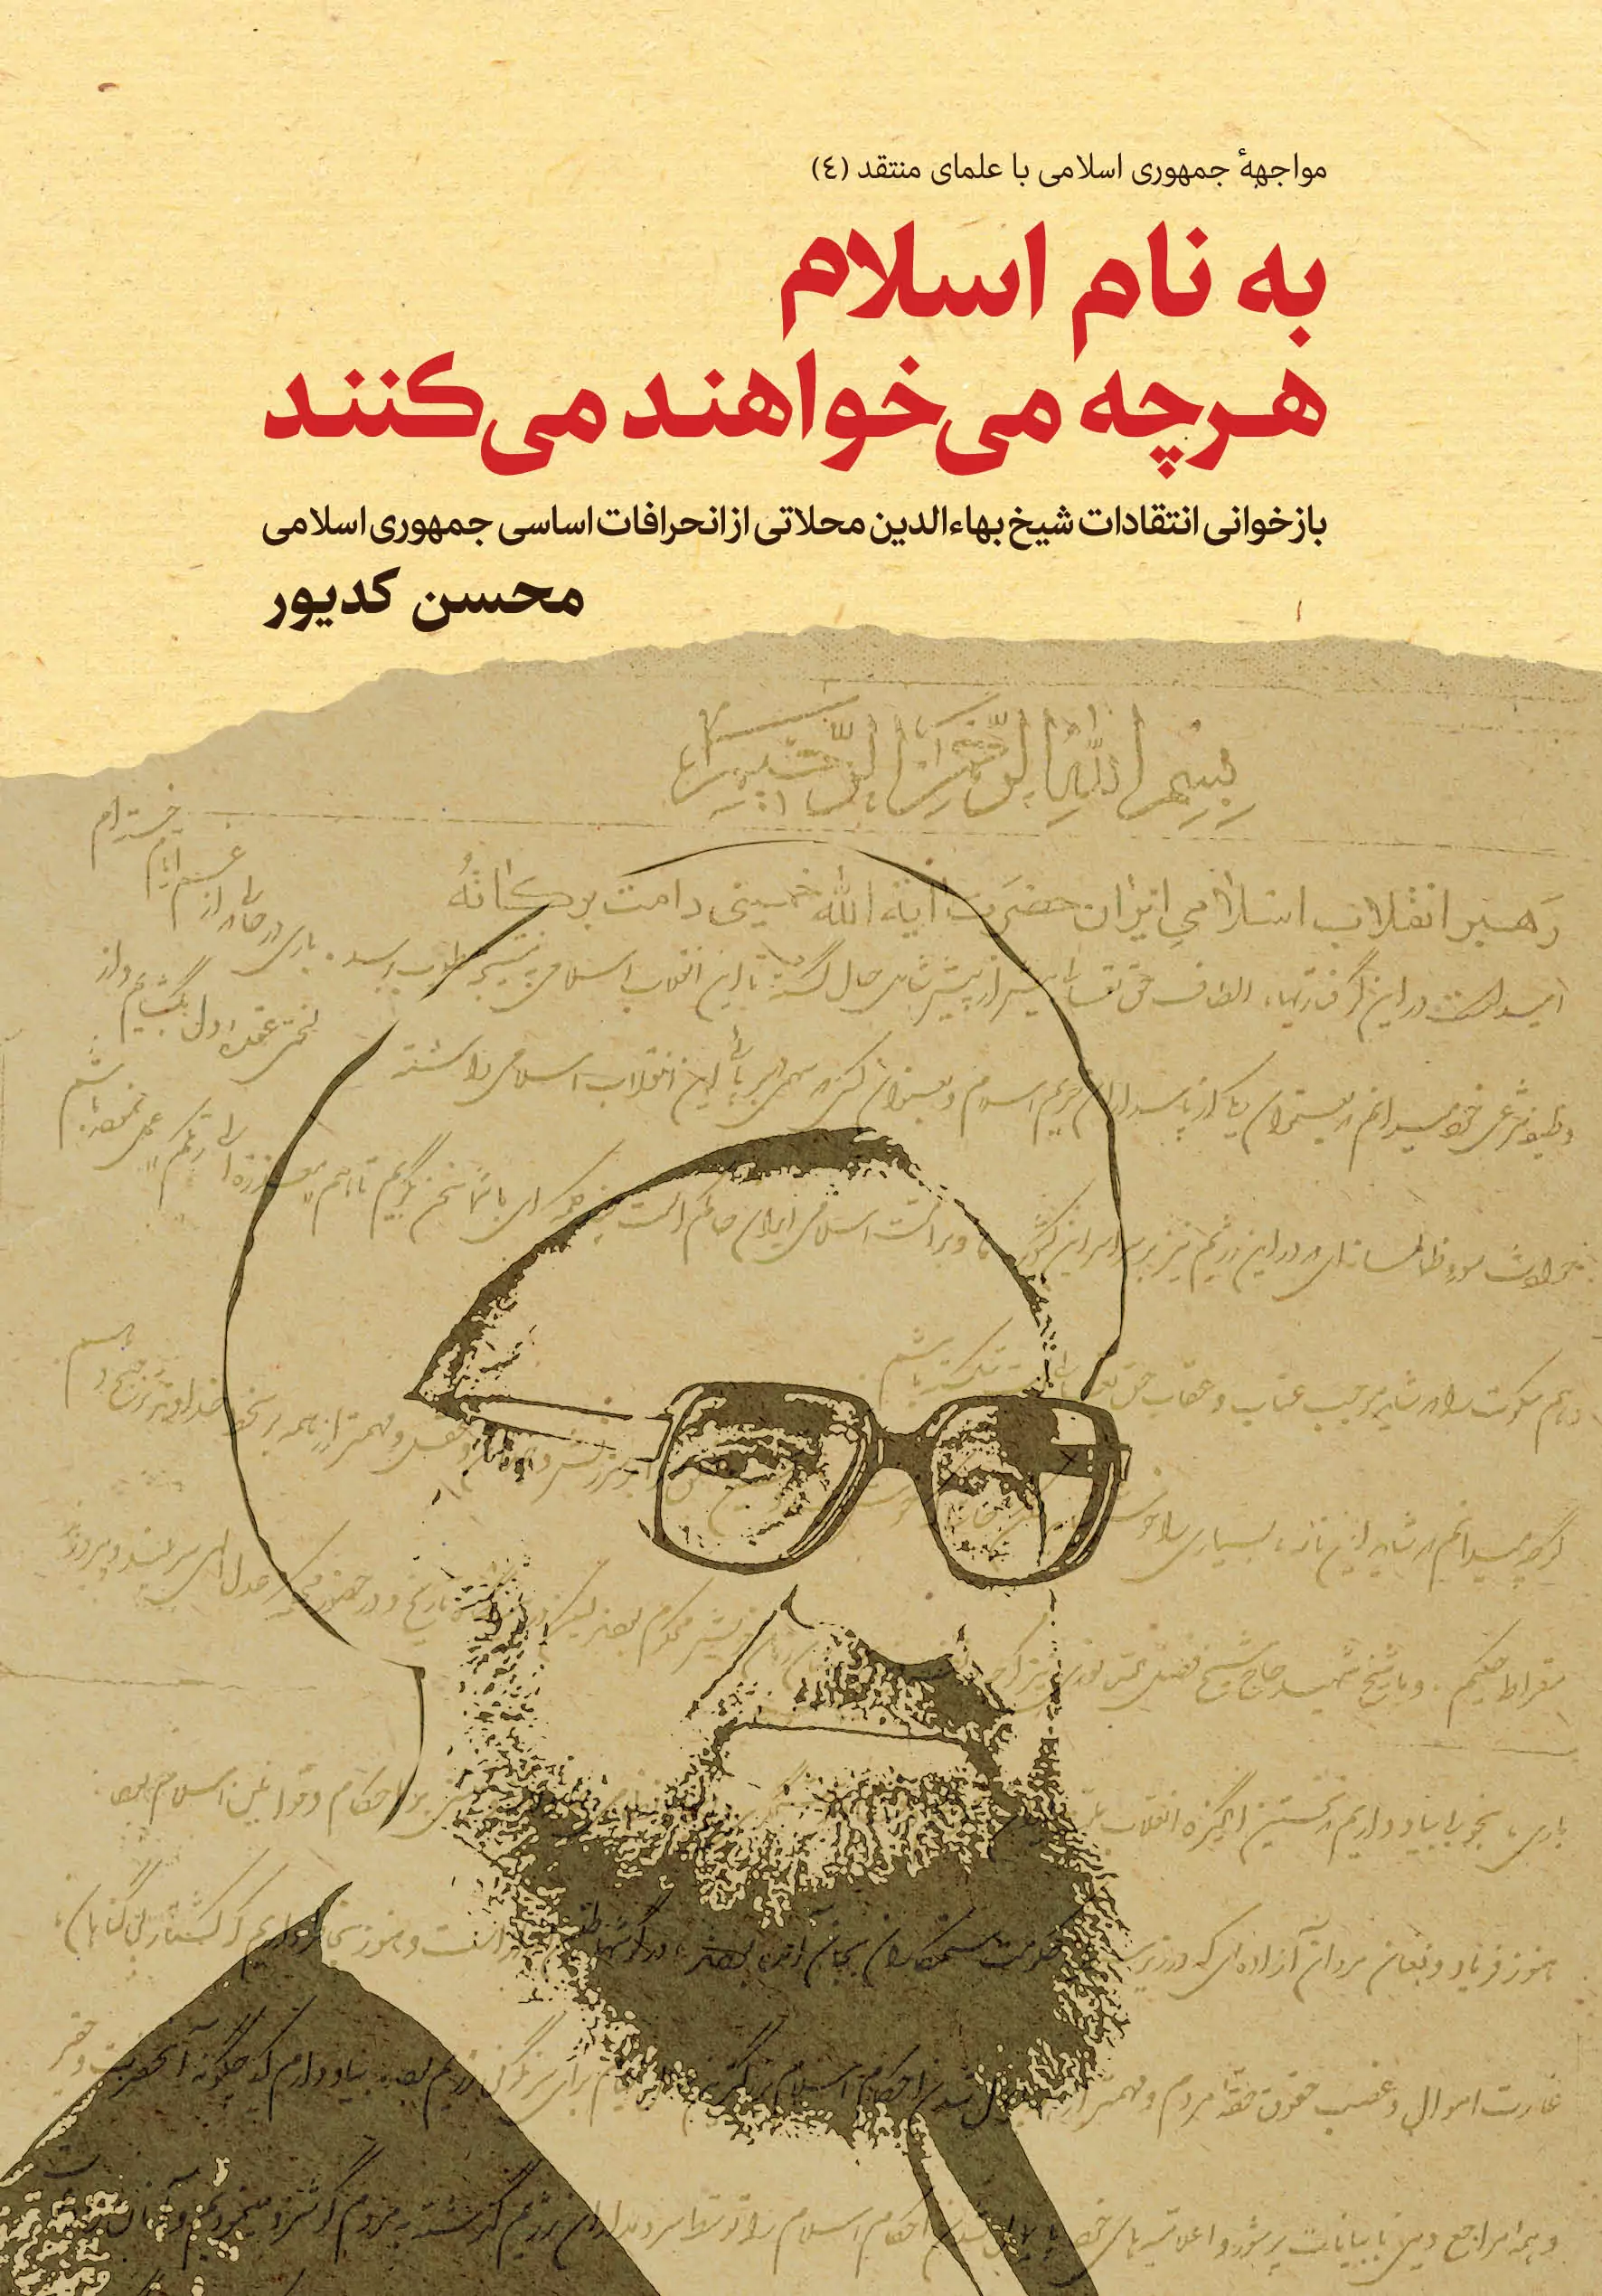 فصل هشتم. آخرین بیانیه: انحراف اساسی جمهوری اسلامی